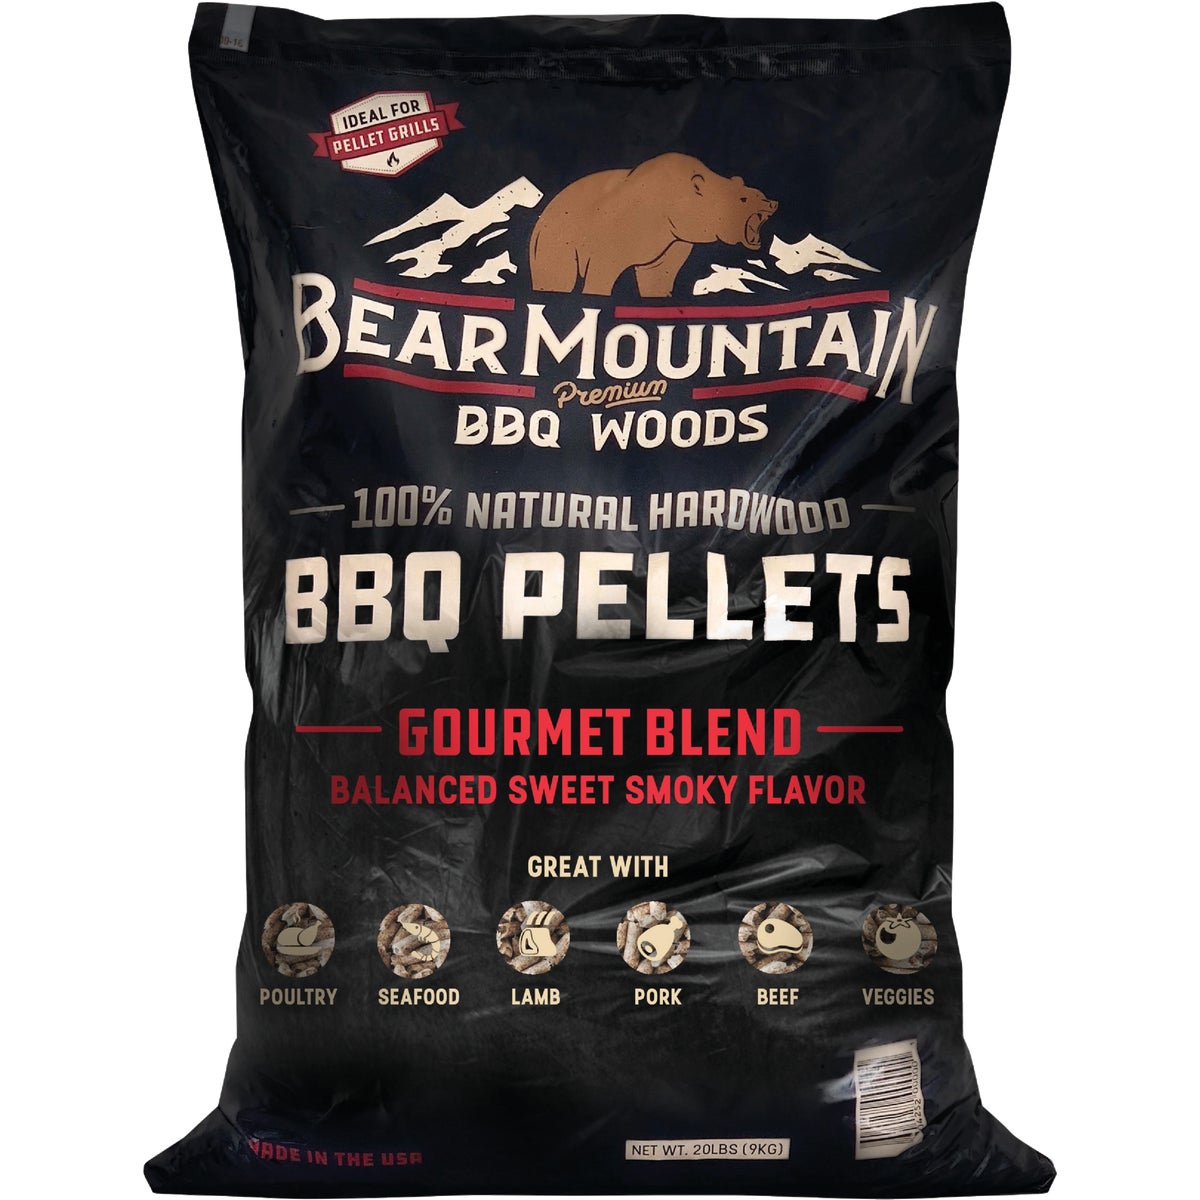 Bear Mountain BBQ Premium Woods 20 Lb. Gourmet Blend Wood Pellet